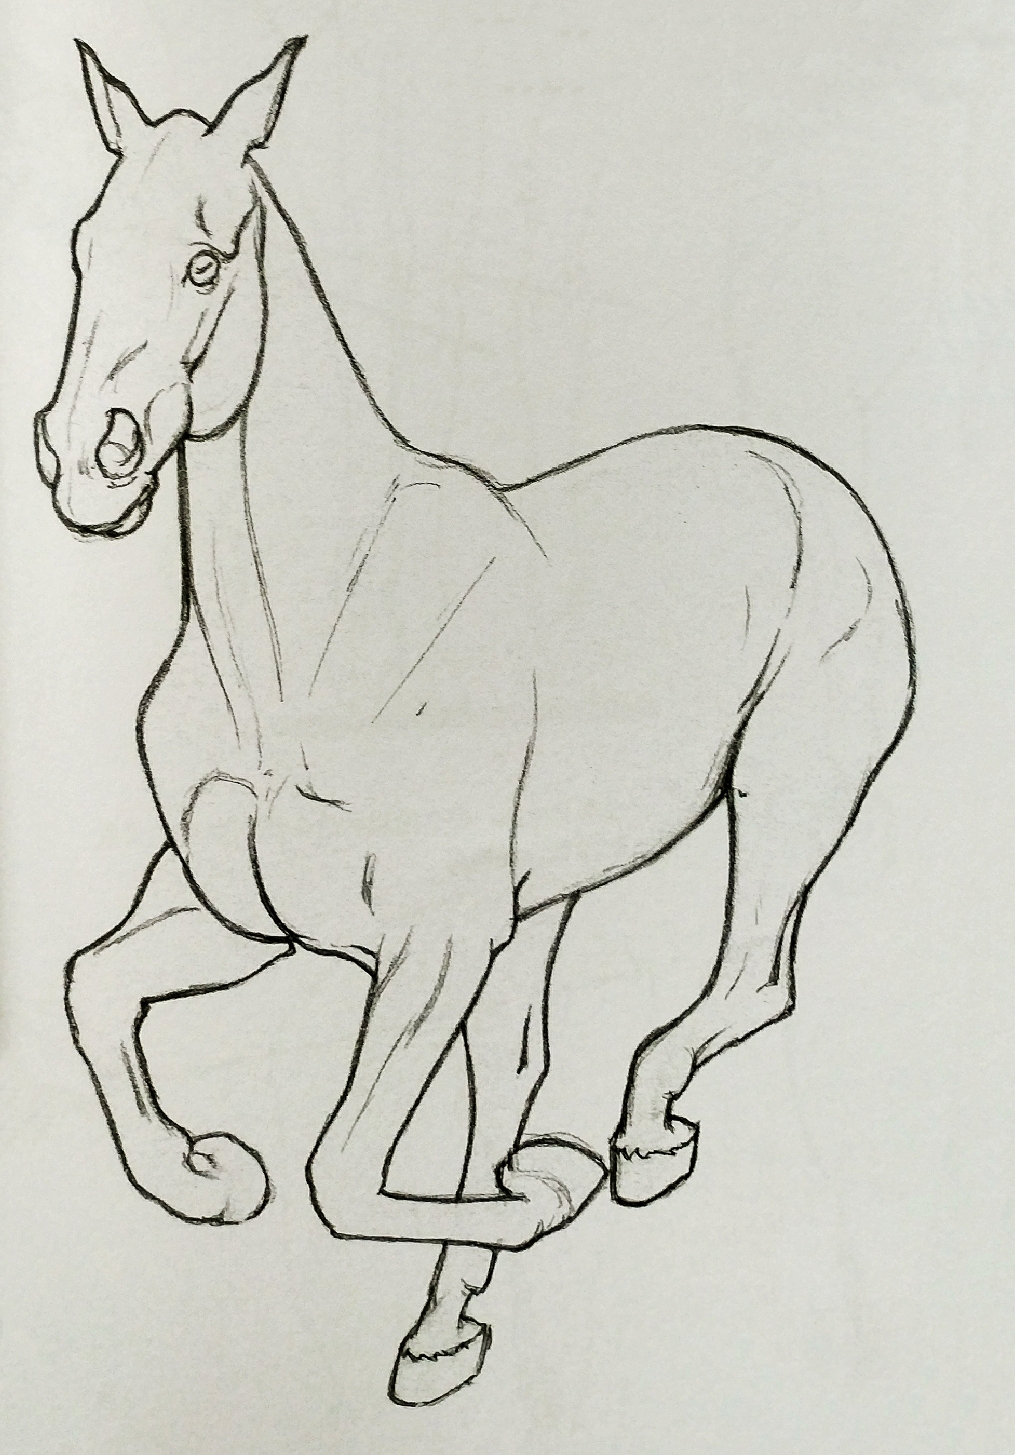 手绘技巧分享:画马的小知识